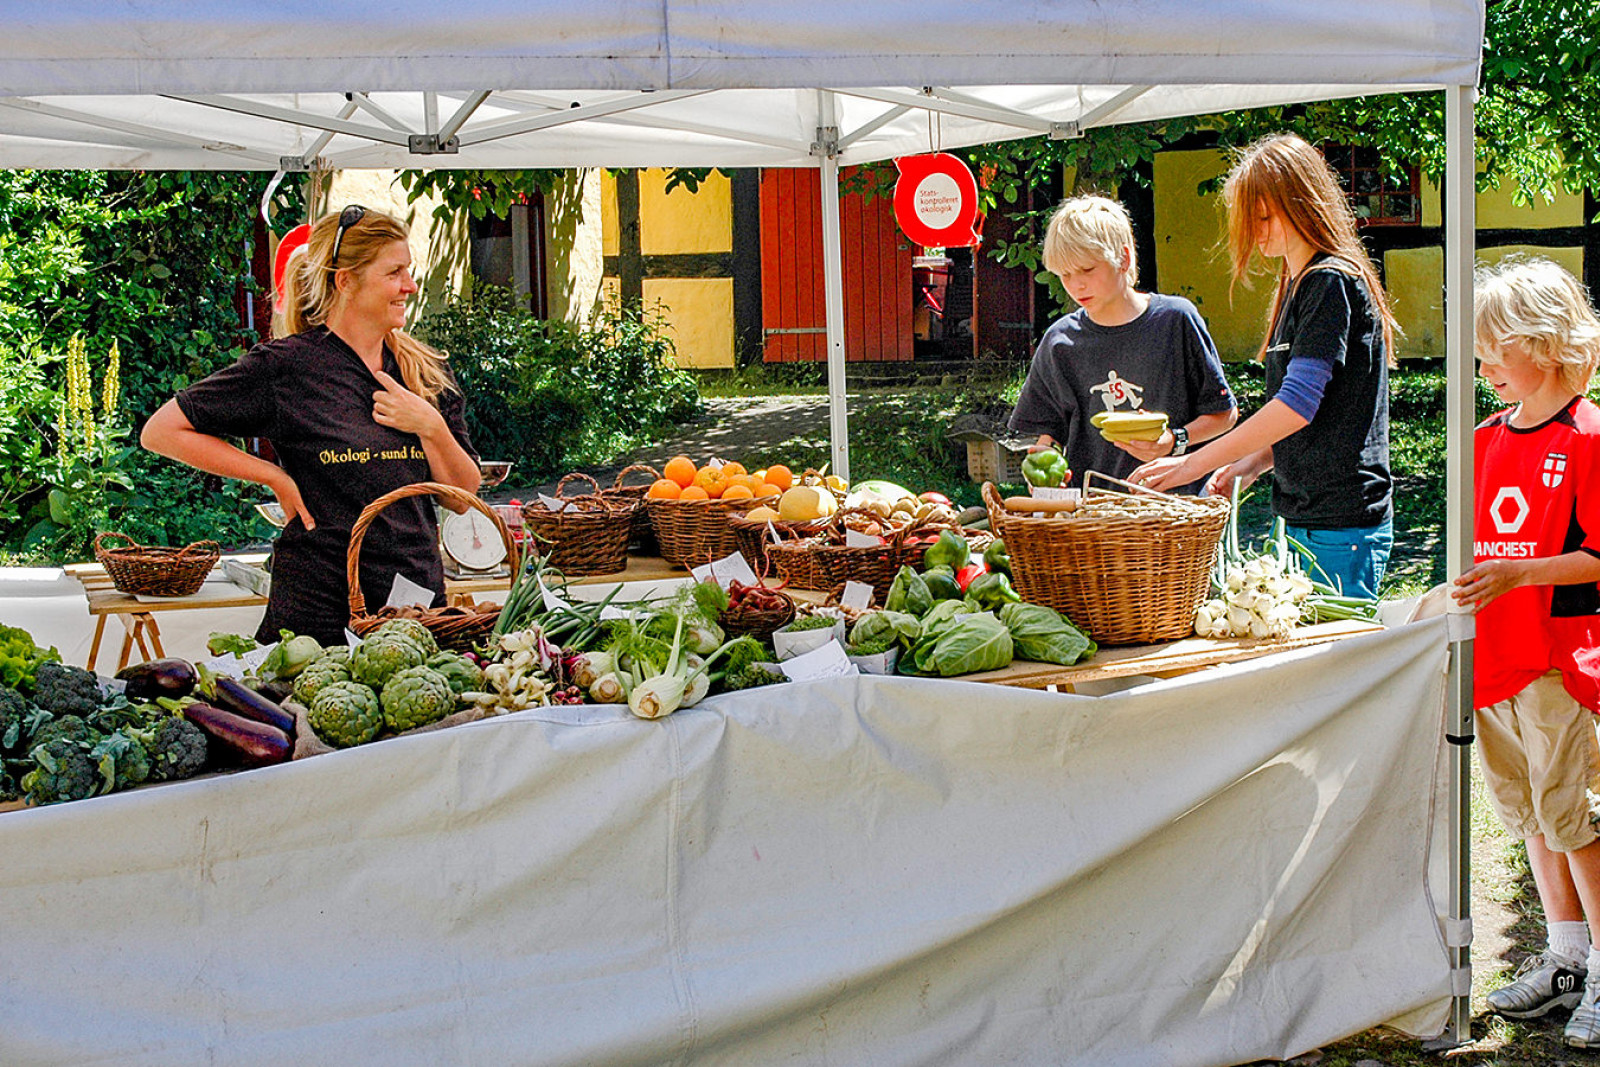 Tre personer står ved en madbod og ser på frugt og grønt. Sælgeren står smilende og ser på.